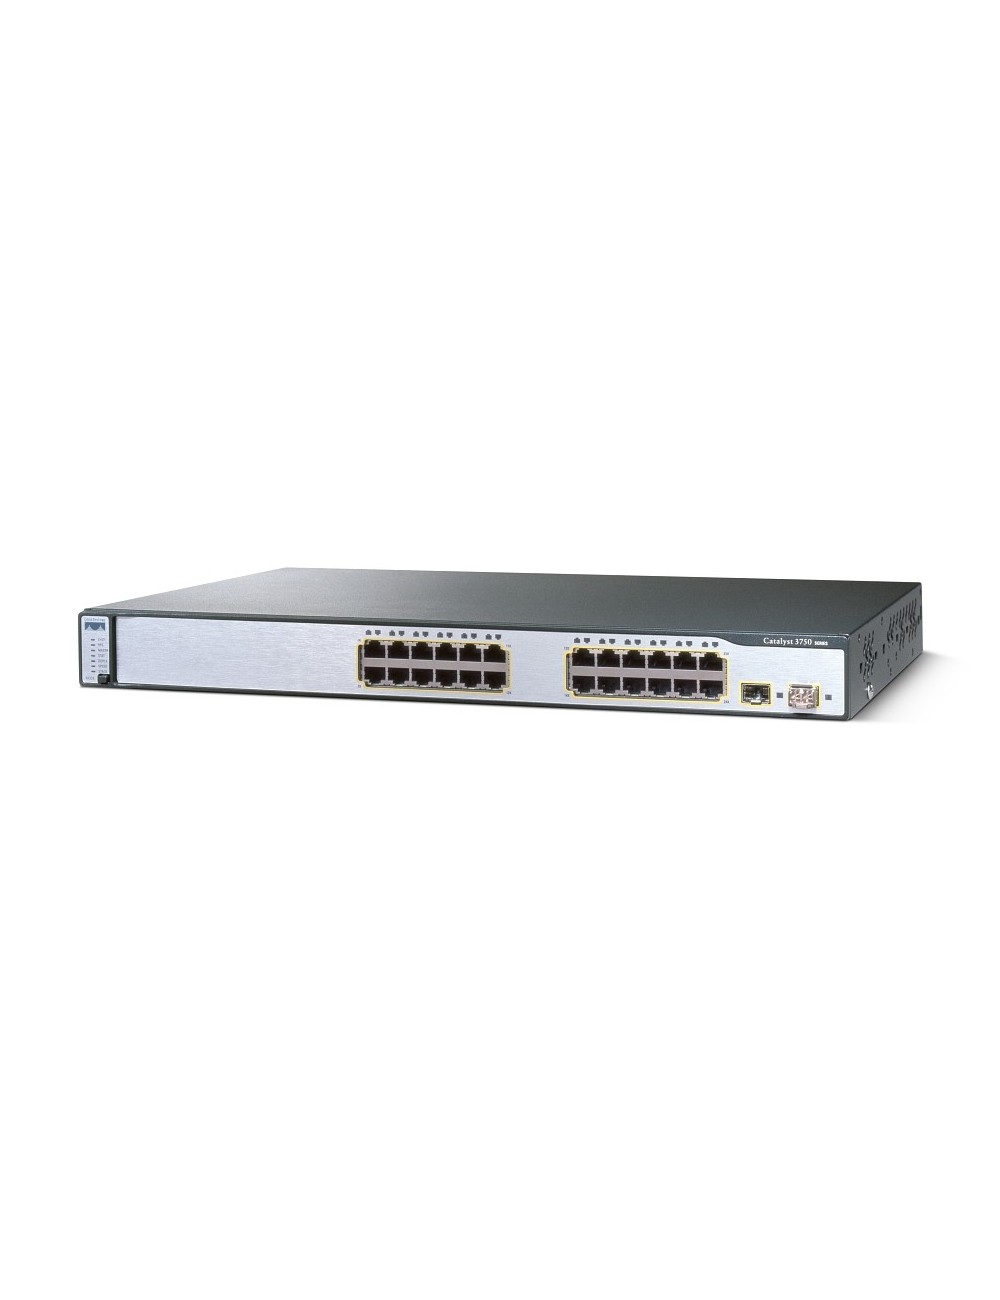 Cisco WS-C3750-24TS-E switch